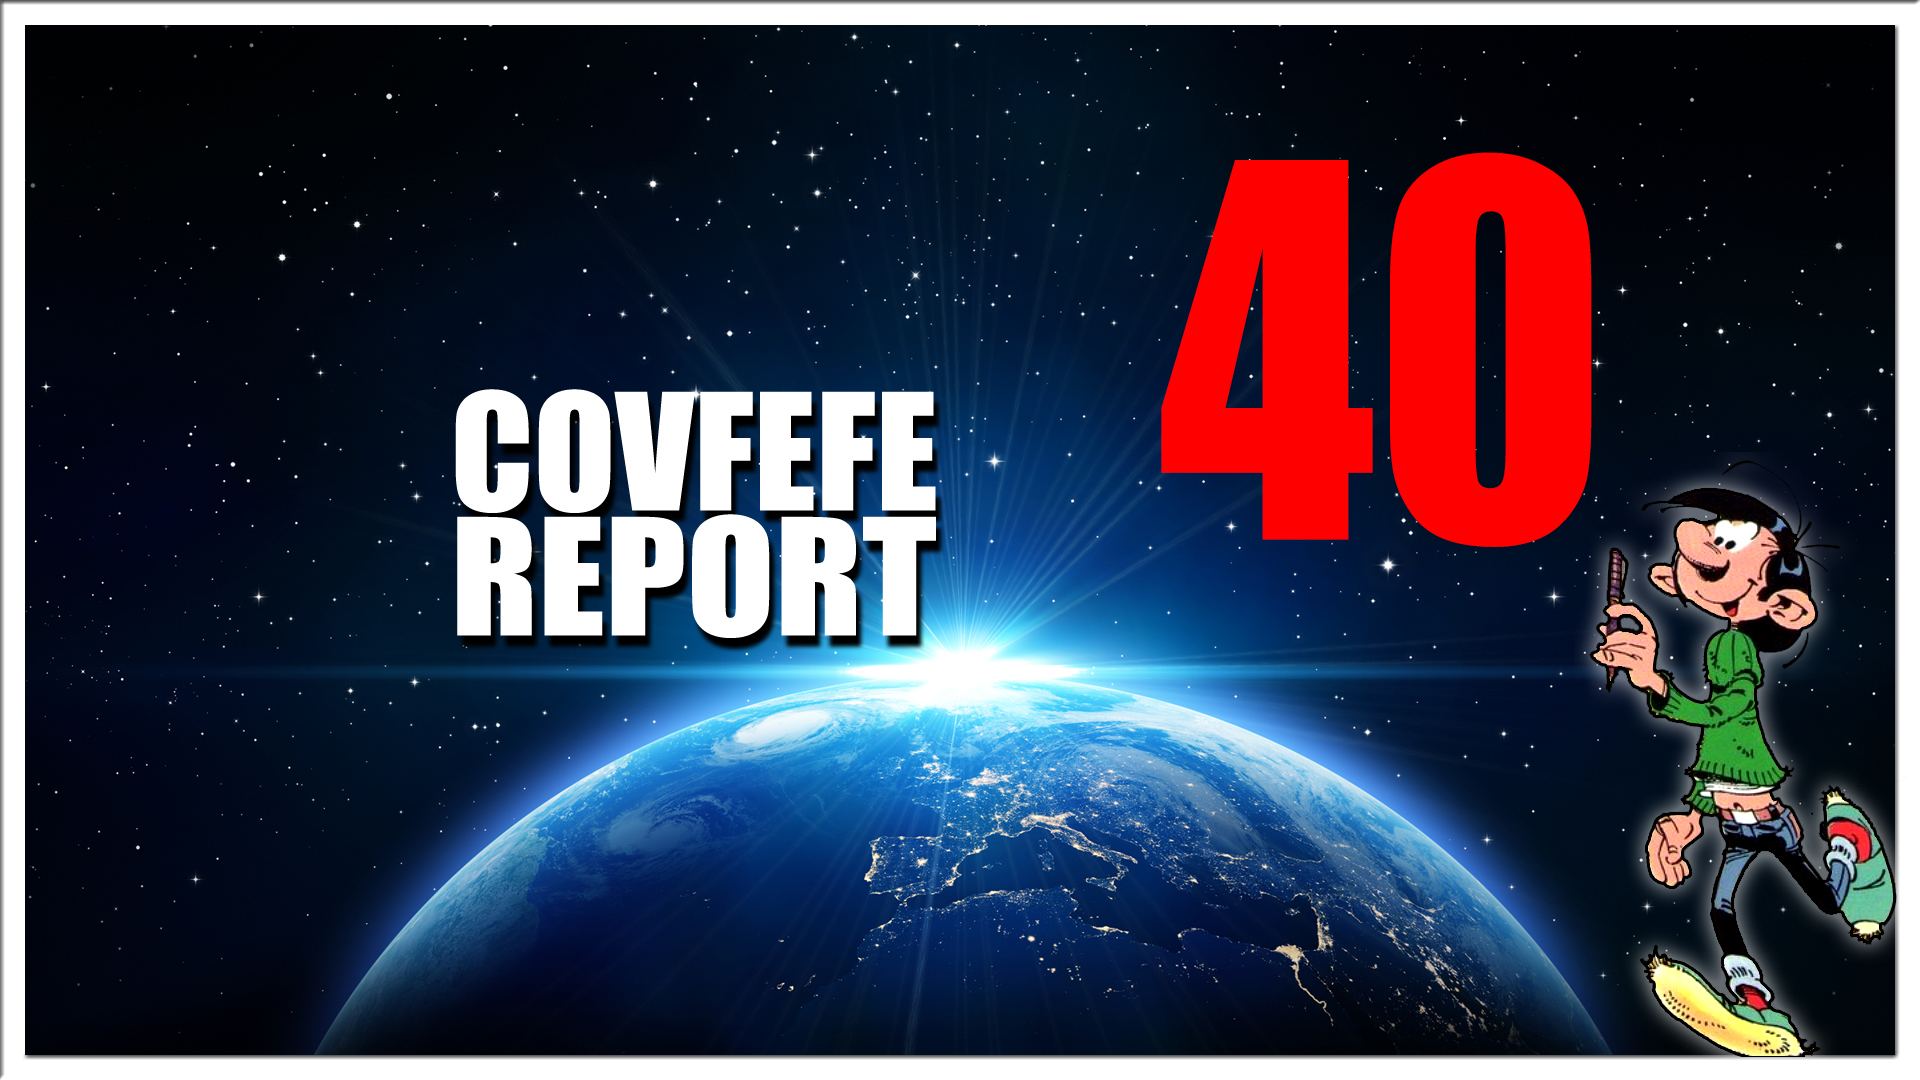 Covfefe Report 40. Senate was the target, Uitleg 8Kun, Ongehoord Nederland